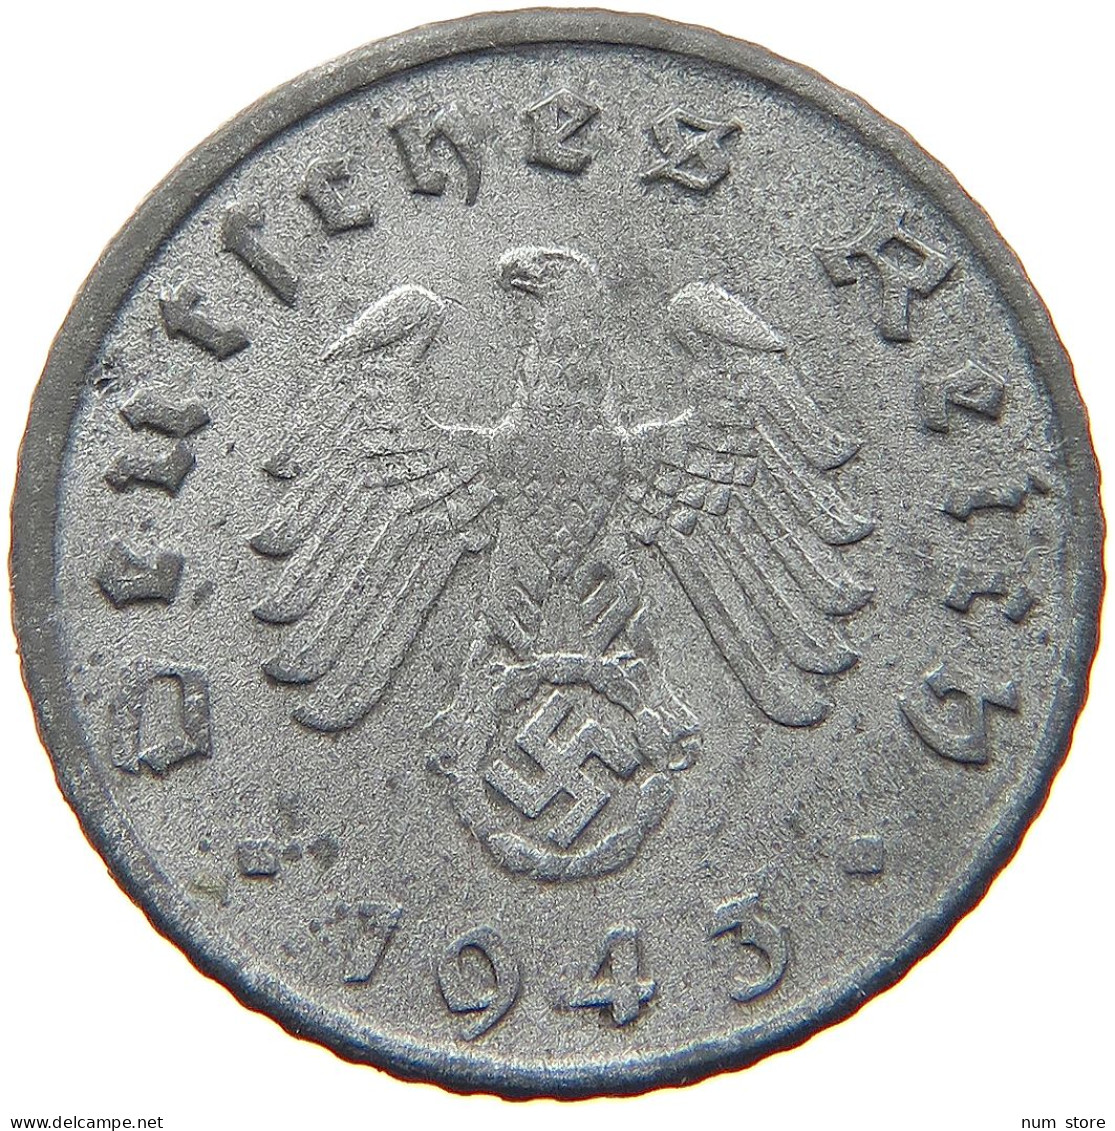 GERMANY 5 REICHSPFENNIG 1943 D DOUBLE STRUCK #s081 0145 - 5 Reichspfennig